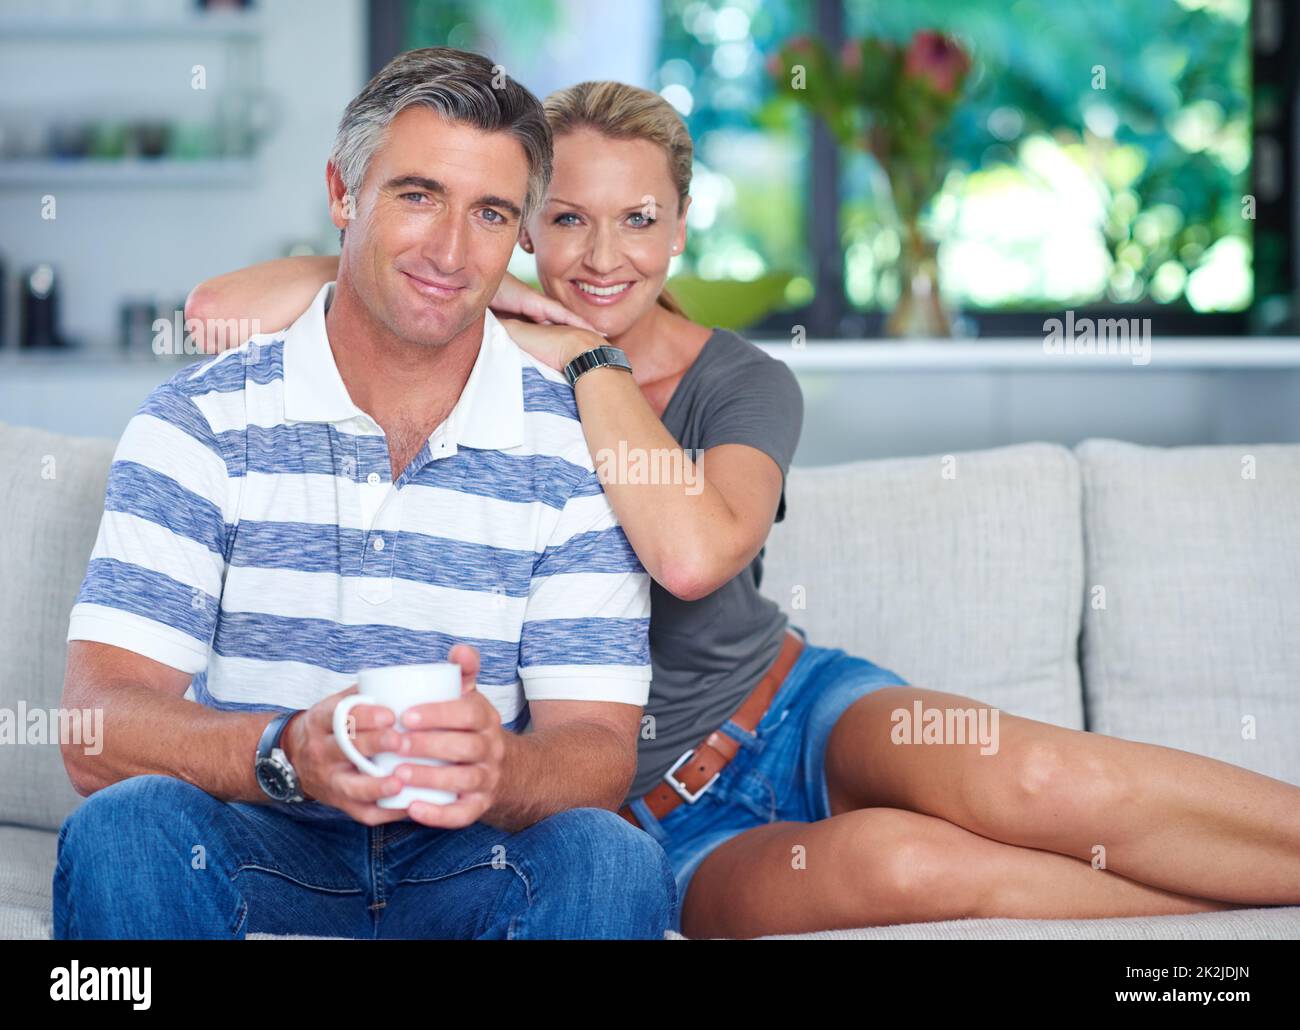 Giornata pigra a casa insieme. Ritratto di una coppia matura e amorevole che si rilassa sul divano di casa. Foto Stock